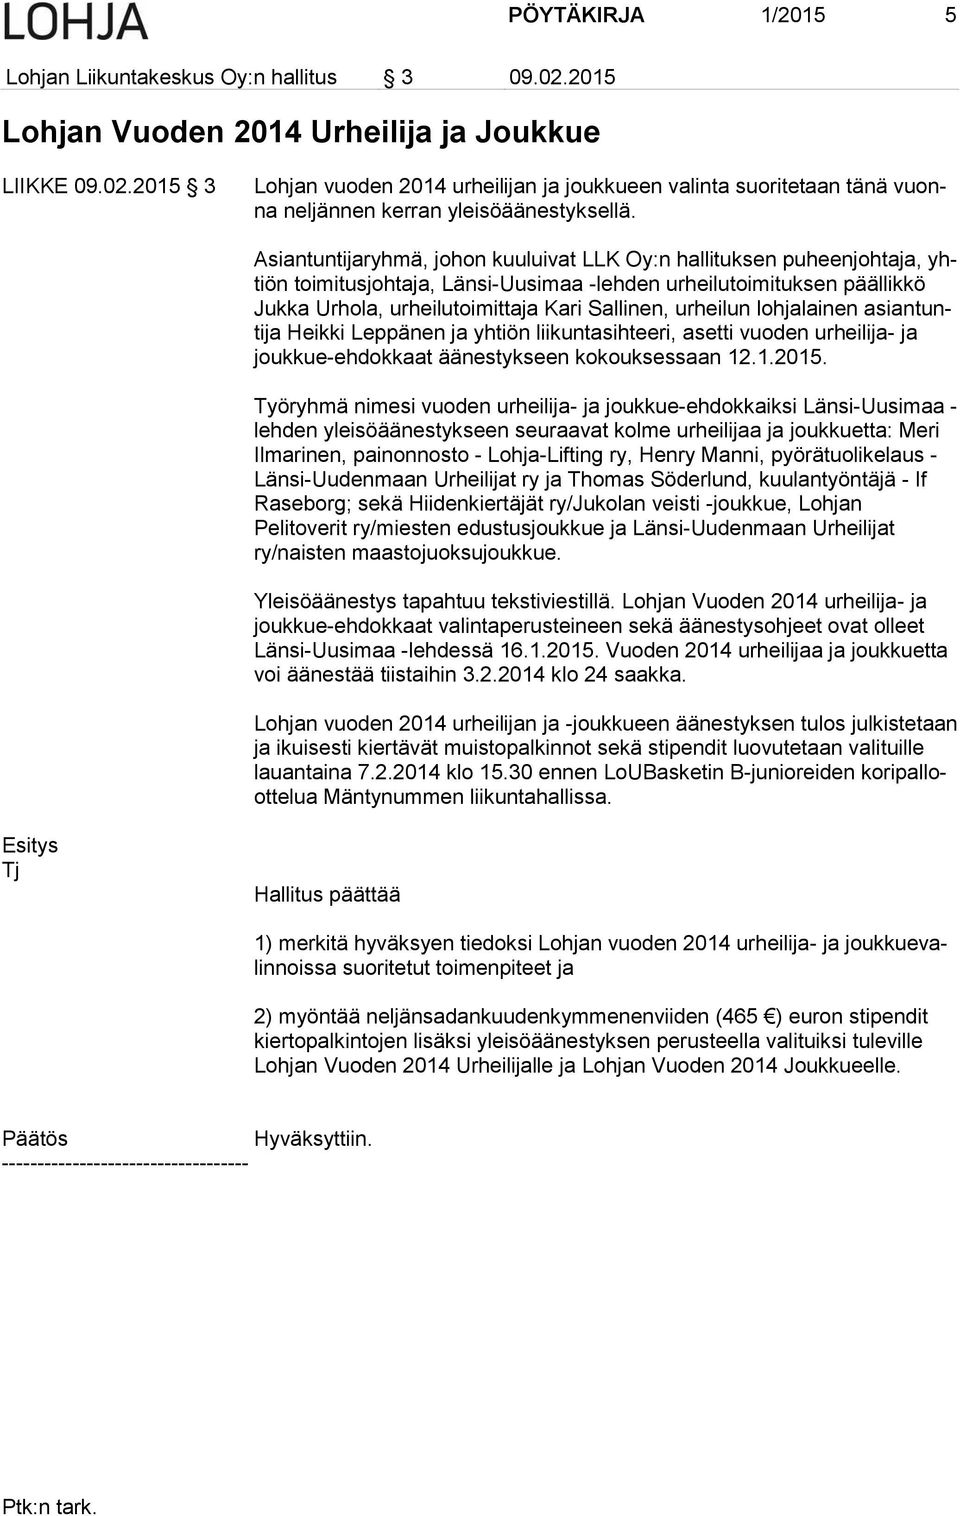 urheilun lohjalainen asiantuntija Heikki Leppänen ja yhtiön liikuntasihteeri, asetti vuoden urheilija- ja joukkue-ehdokkaat äänestykseen kokouksessaan 12.1.2015.